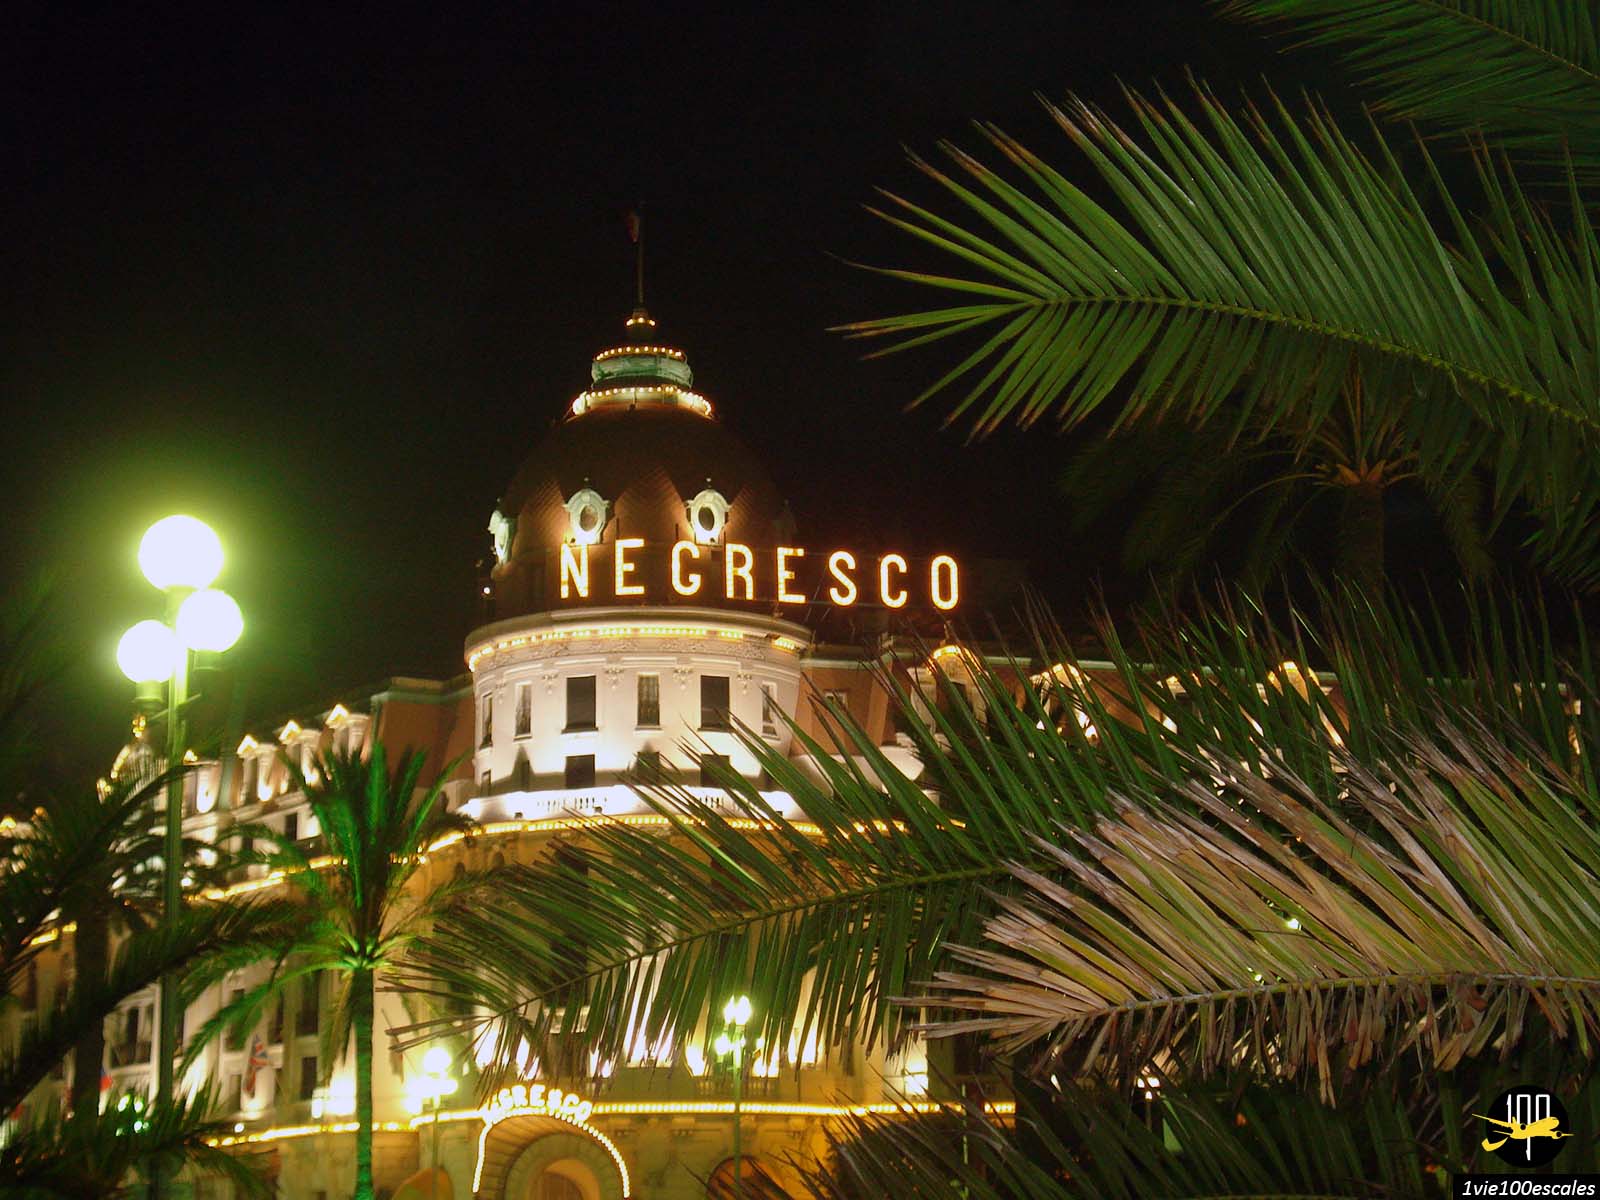 L'hôtel 5 étoiles Negresco de Nice depuis la promenade des anglais